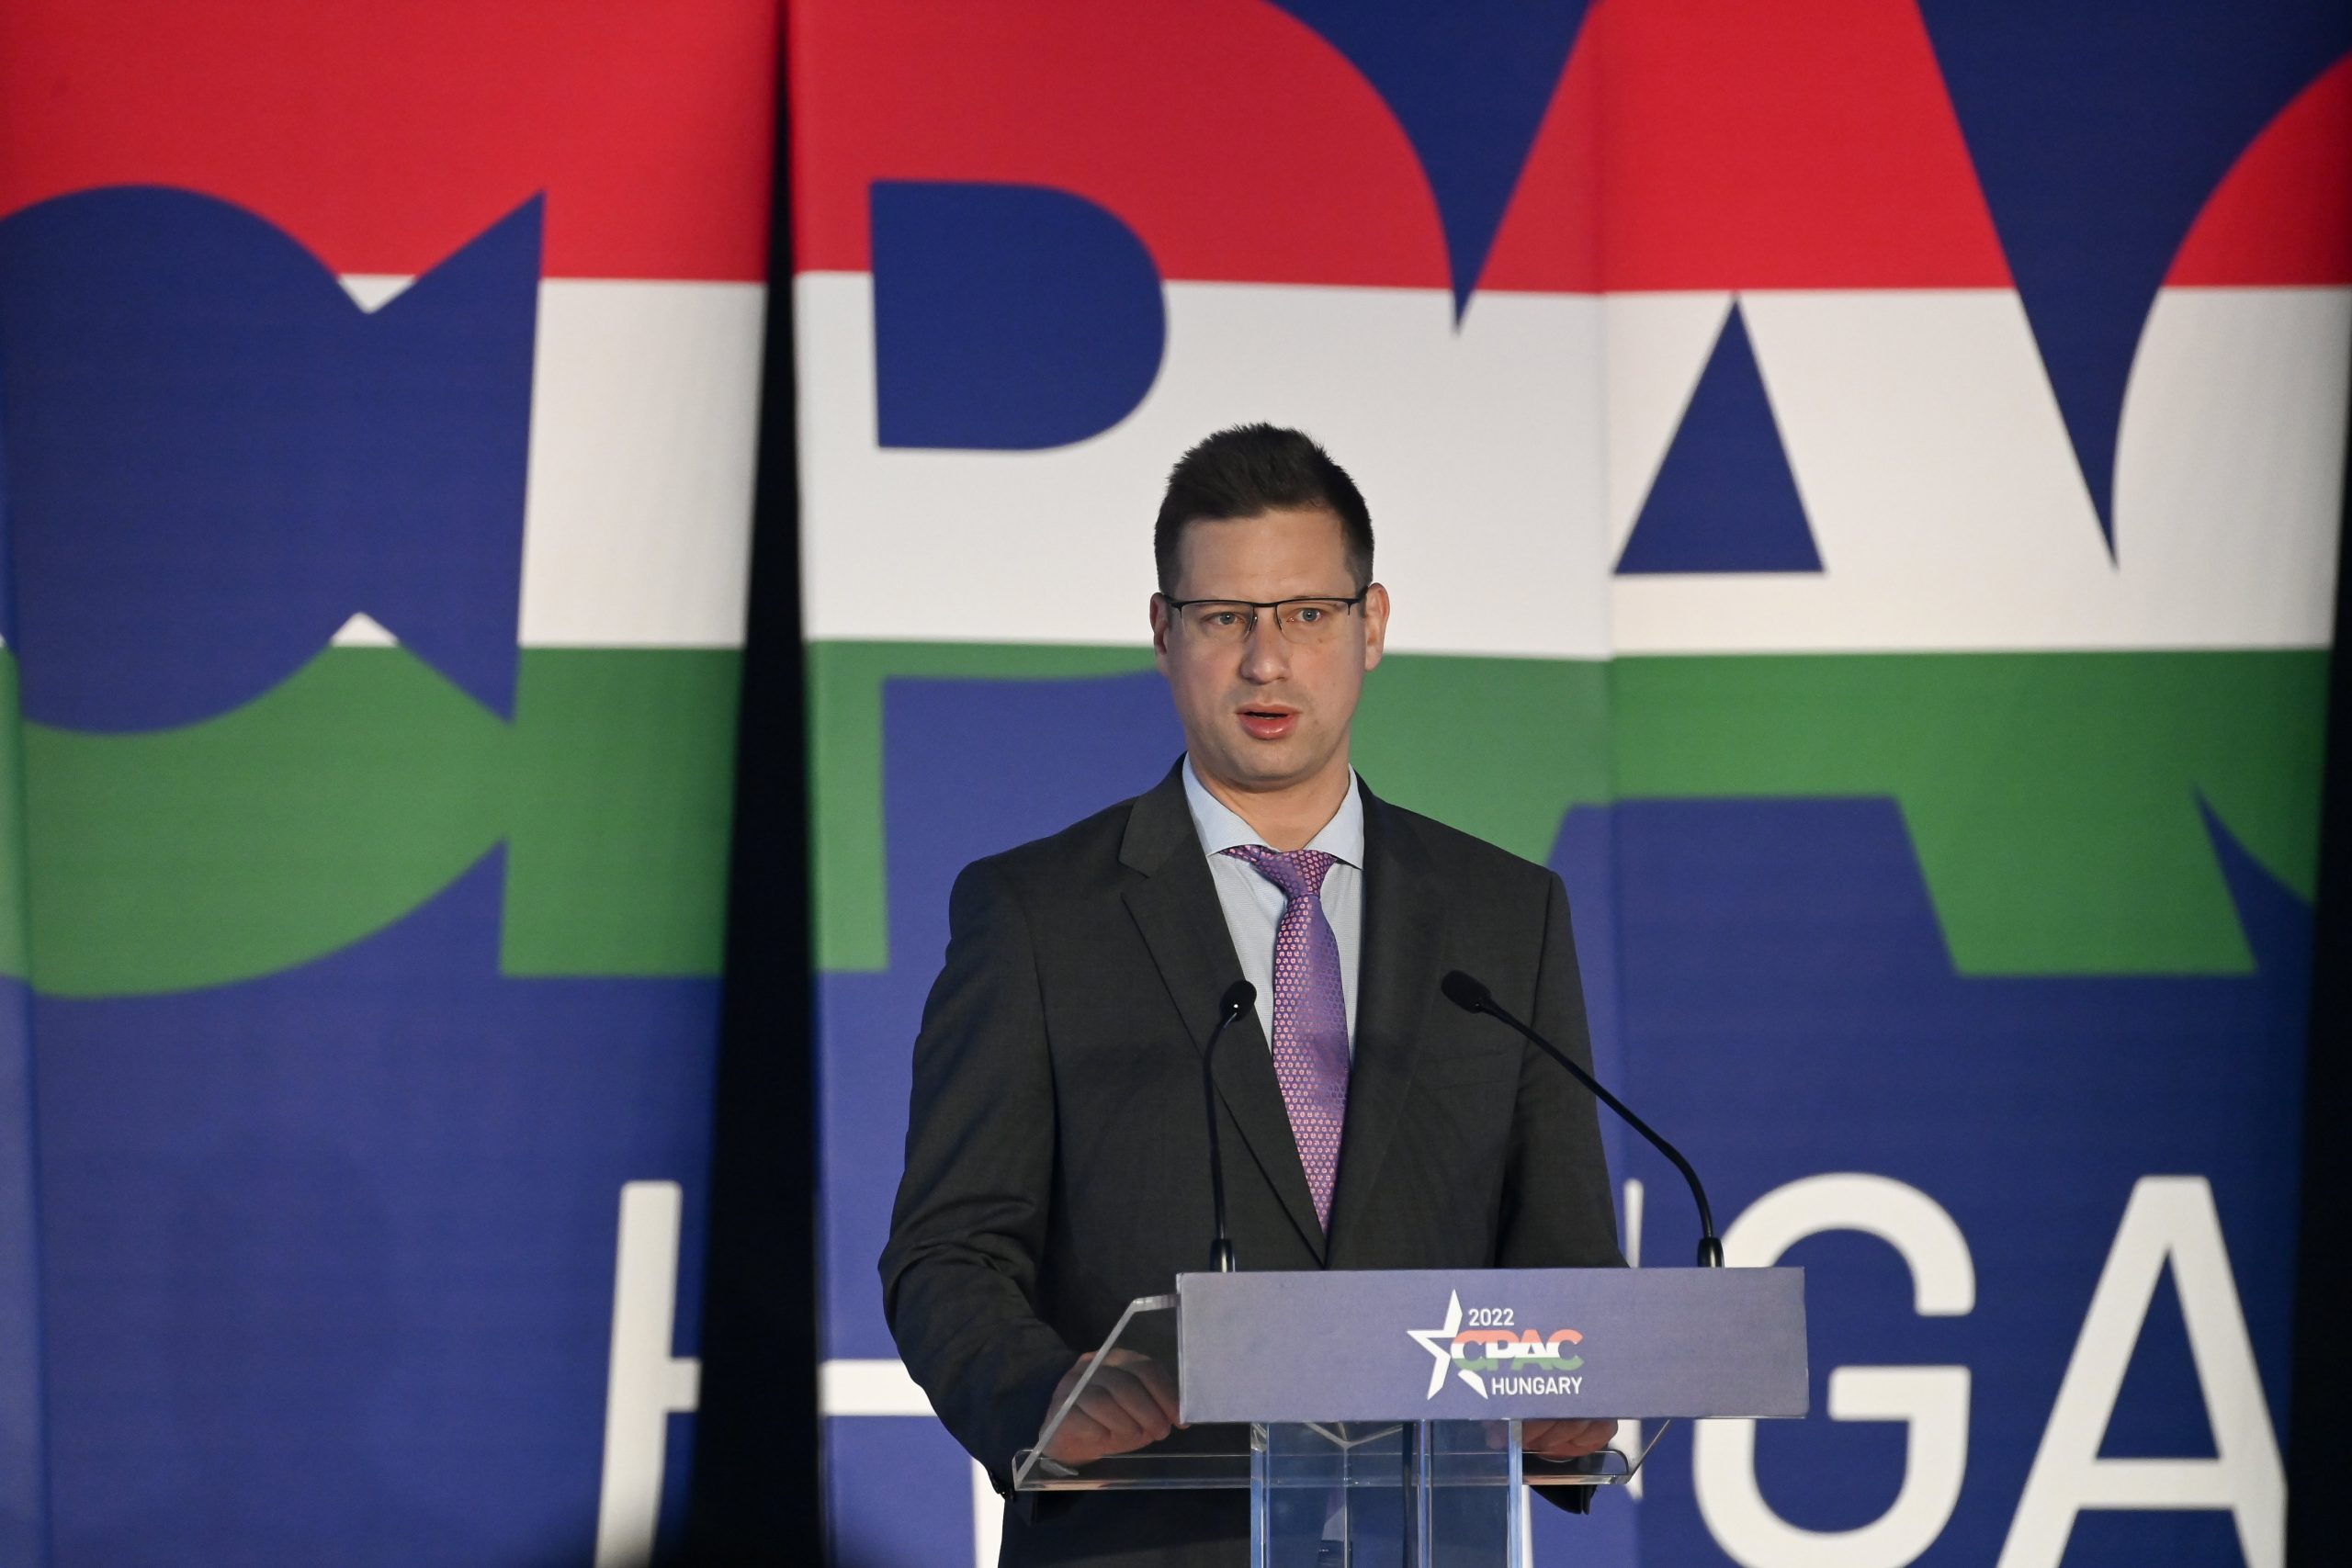 PMO Head at CPAC: Hungary Govt Has 'More Republican than European Friends'